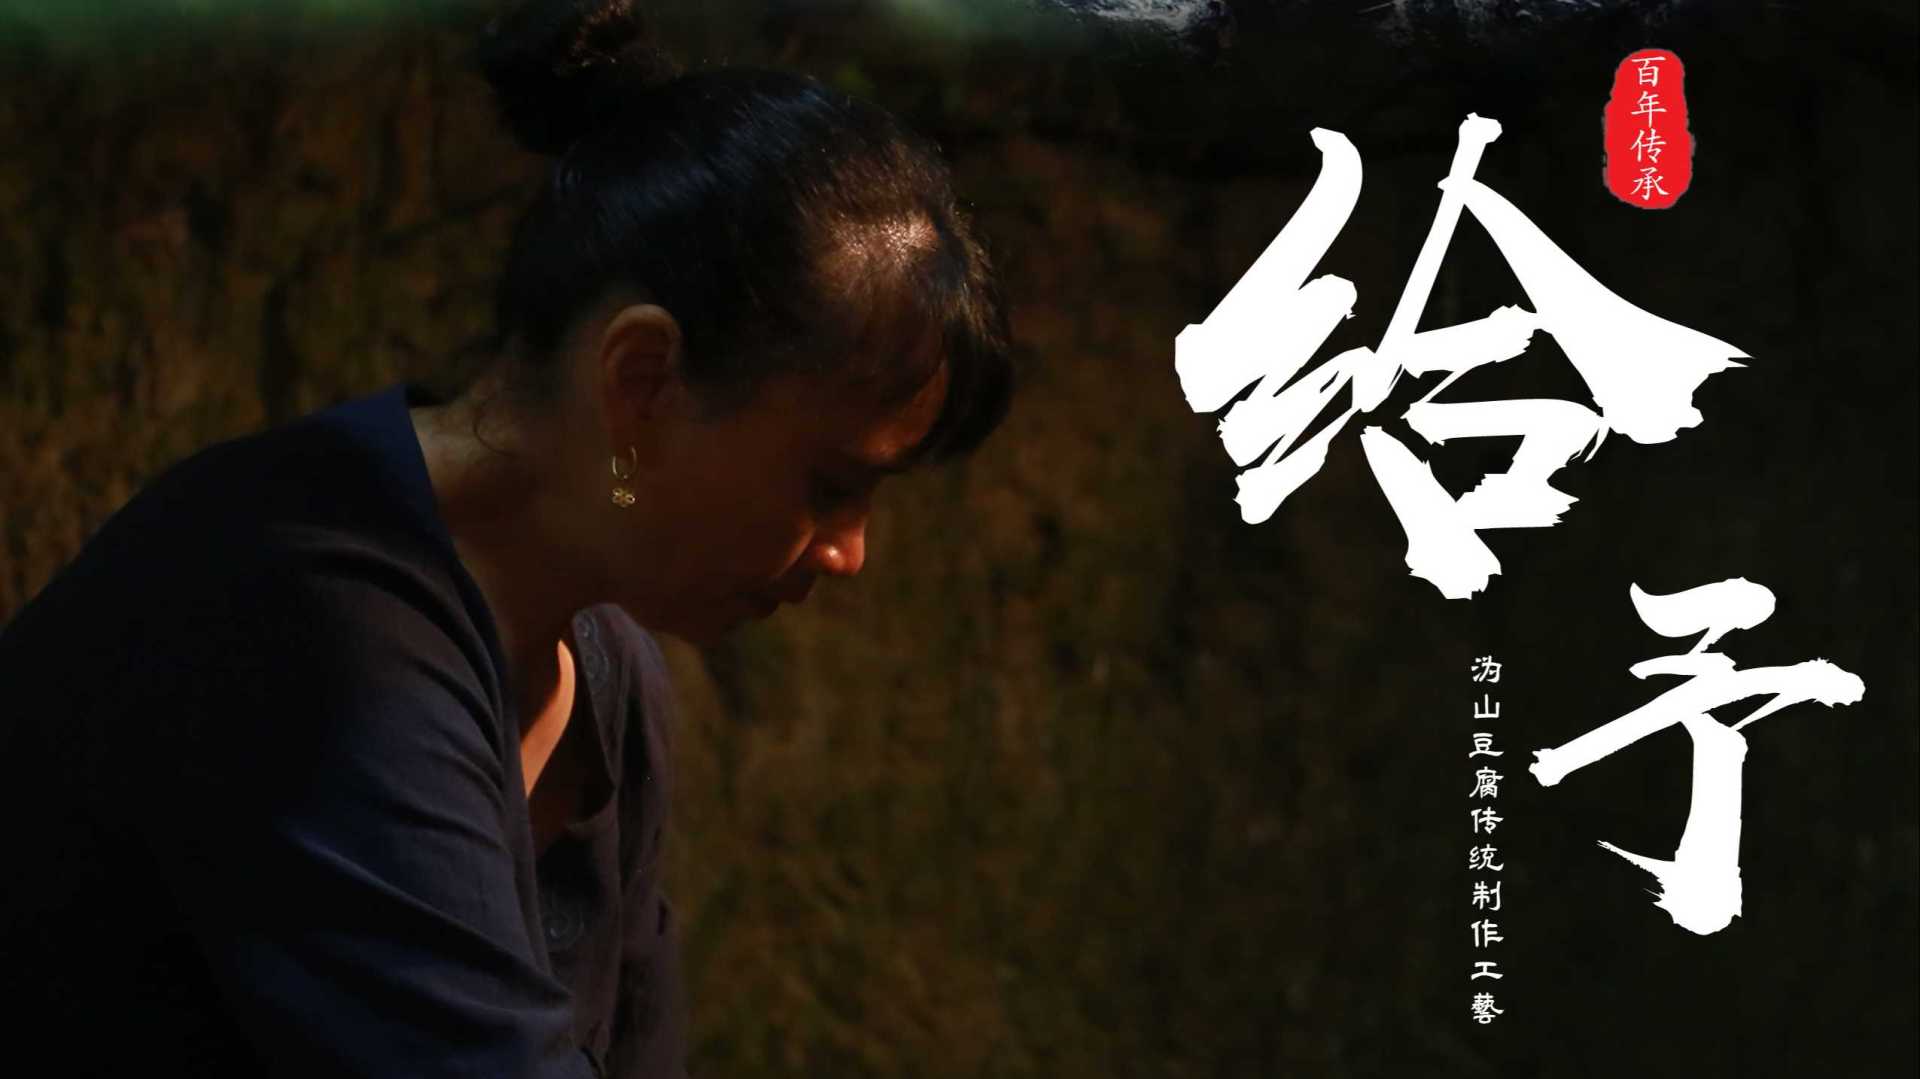 湖湘美食文化纪录片——《给予》